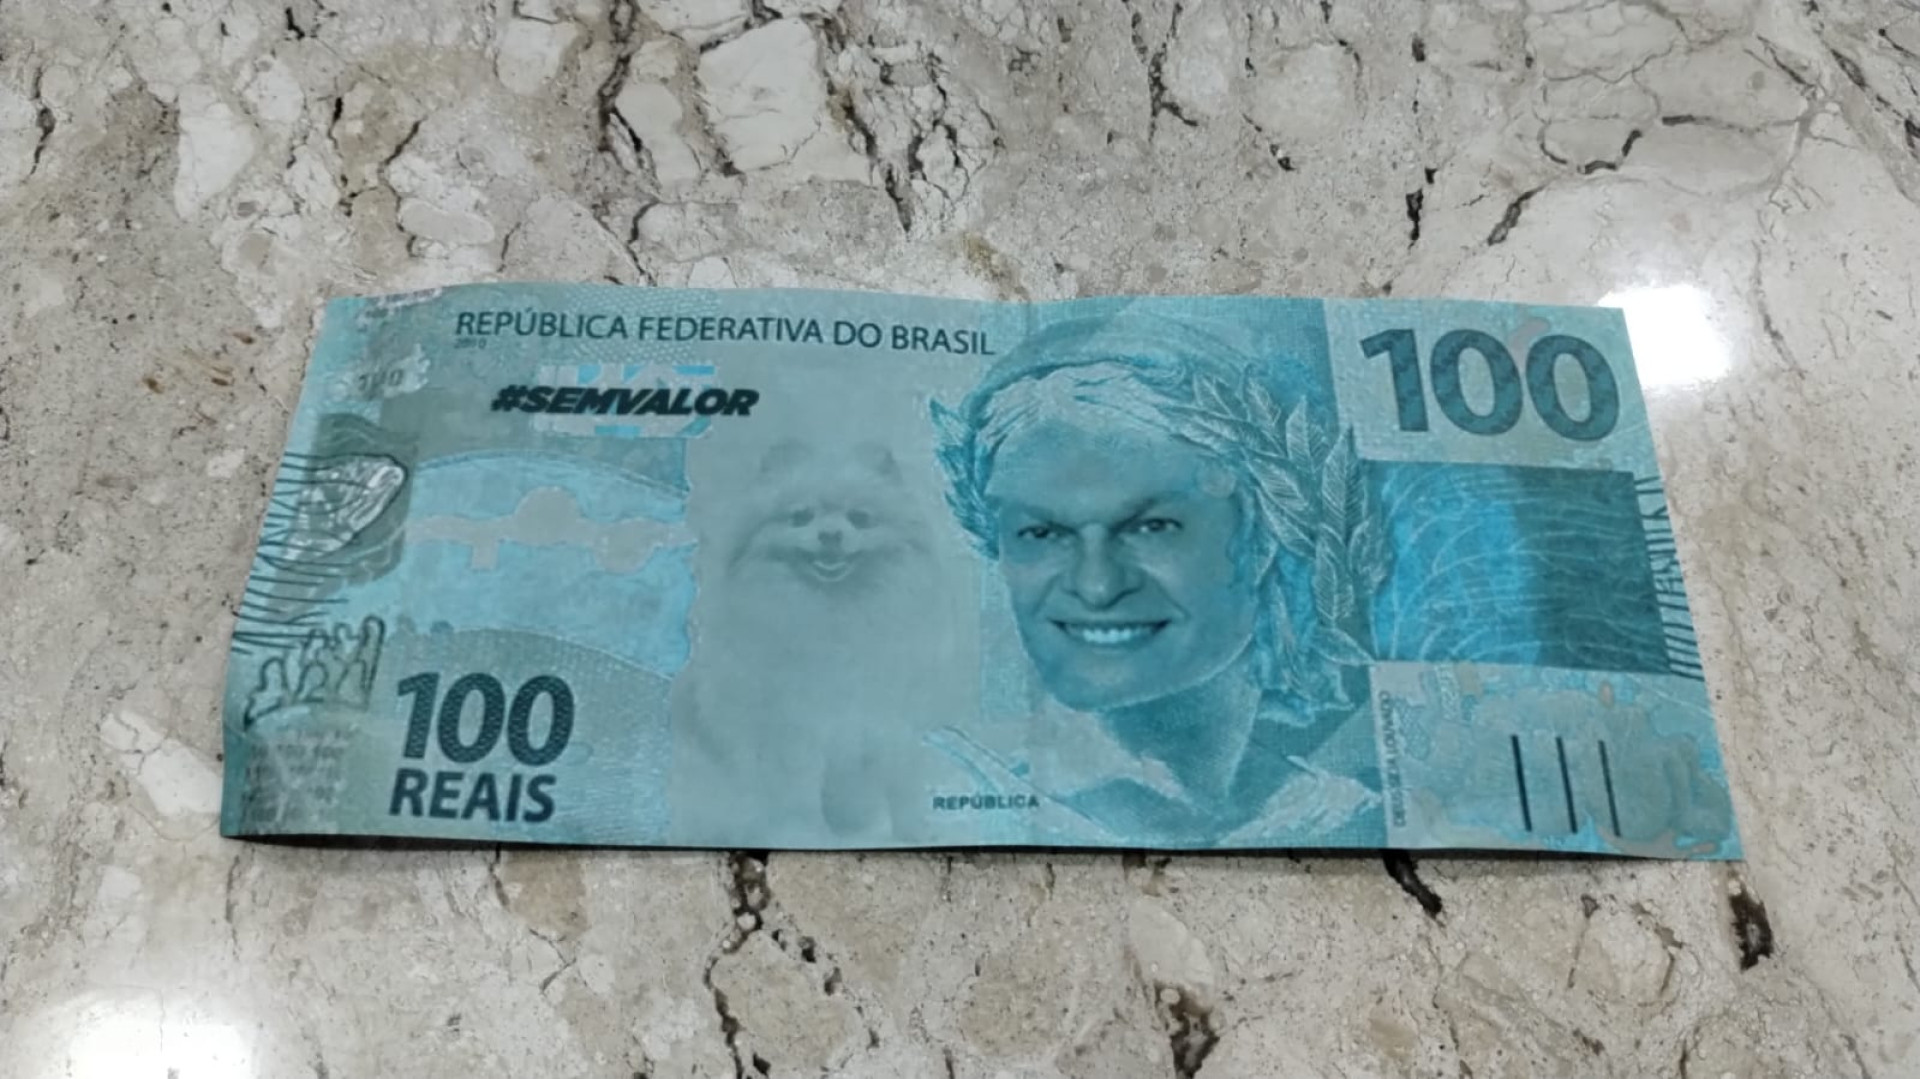 Cédulas falsas de dinheiro impressas com o rosto do prefeito José Sarto (PDT) e da cadela Marrion, mascote na campanha de 2020 